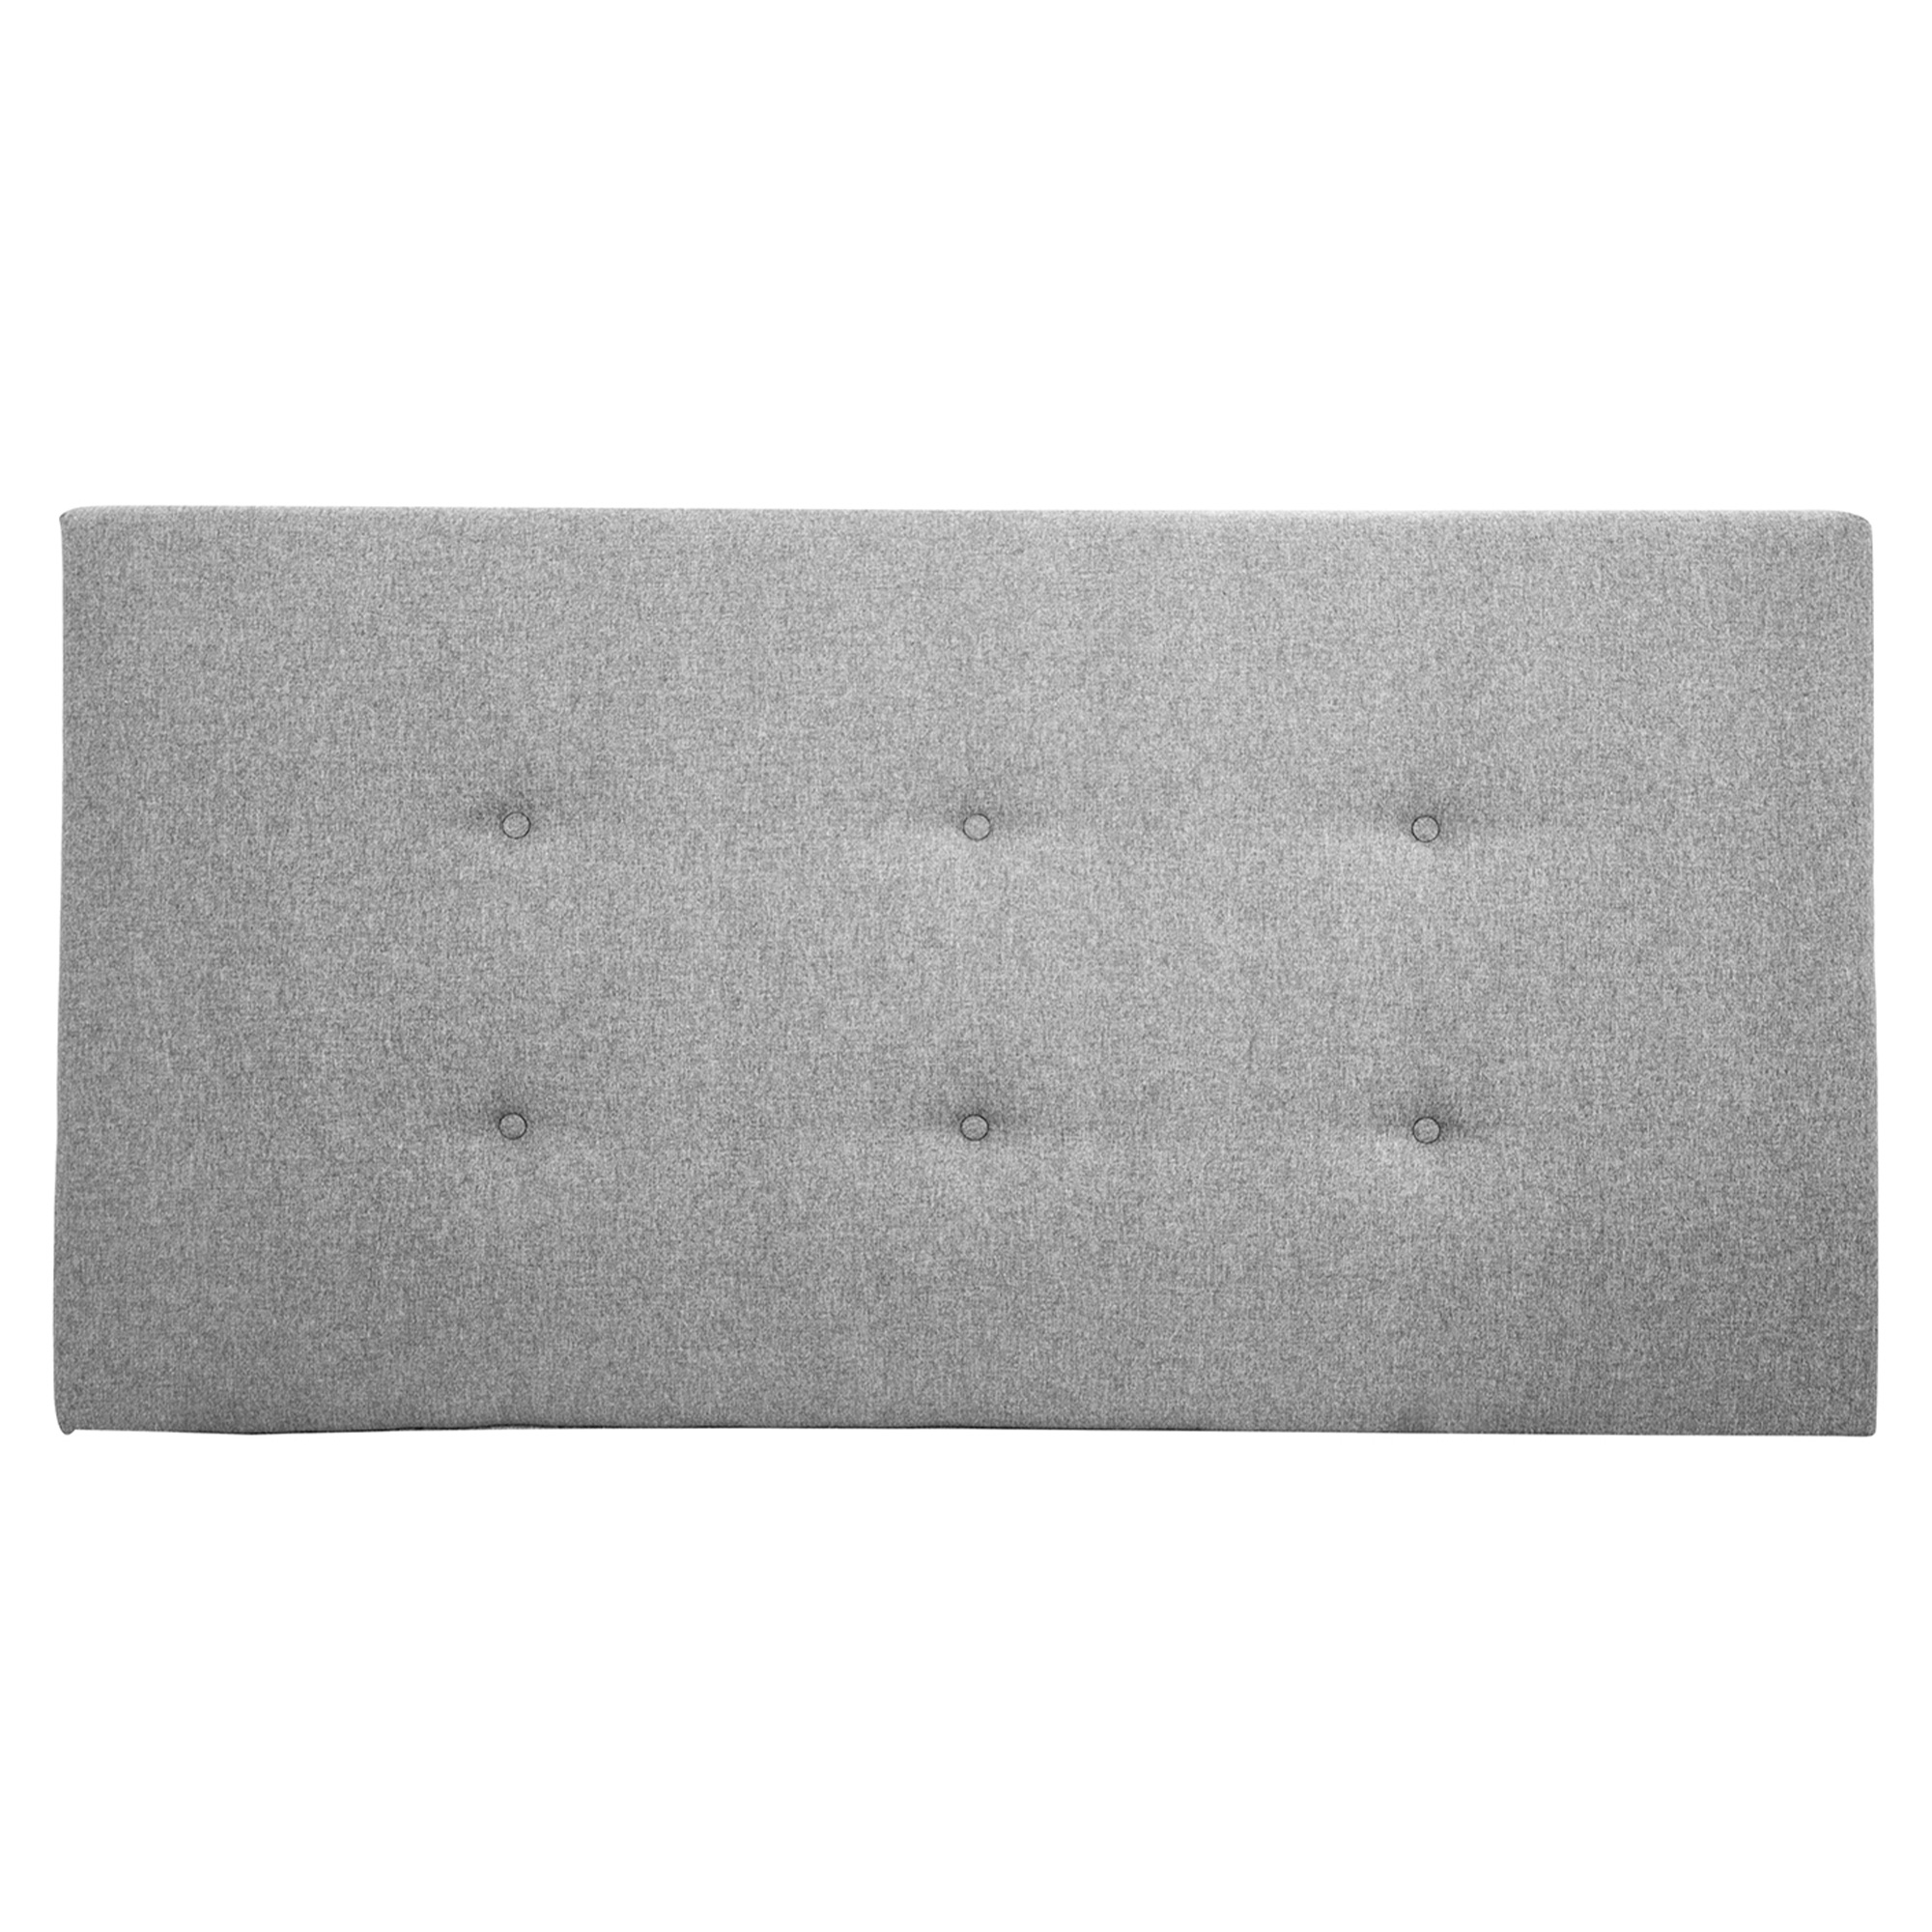 Tête de lit polyester couleur grise 90x80cm